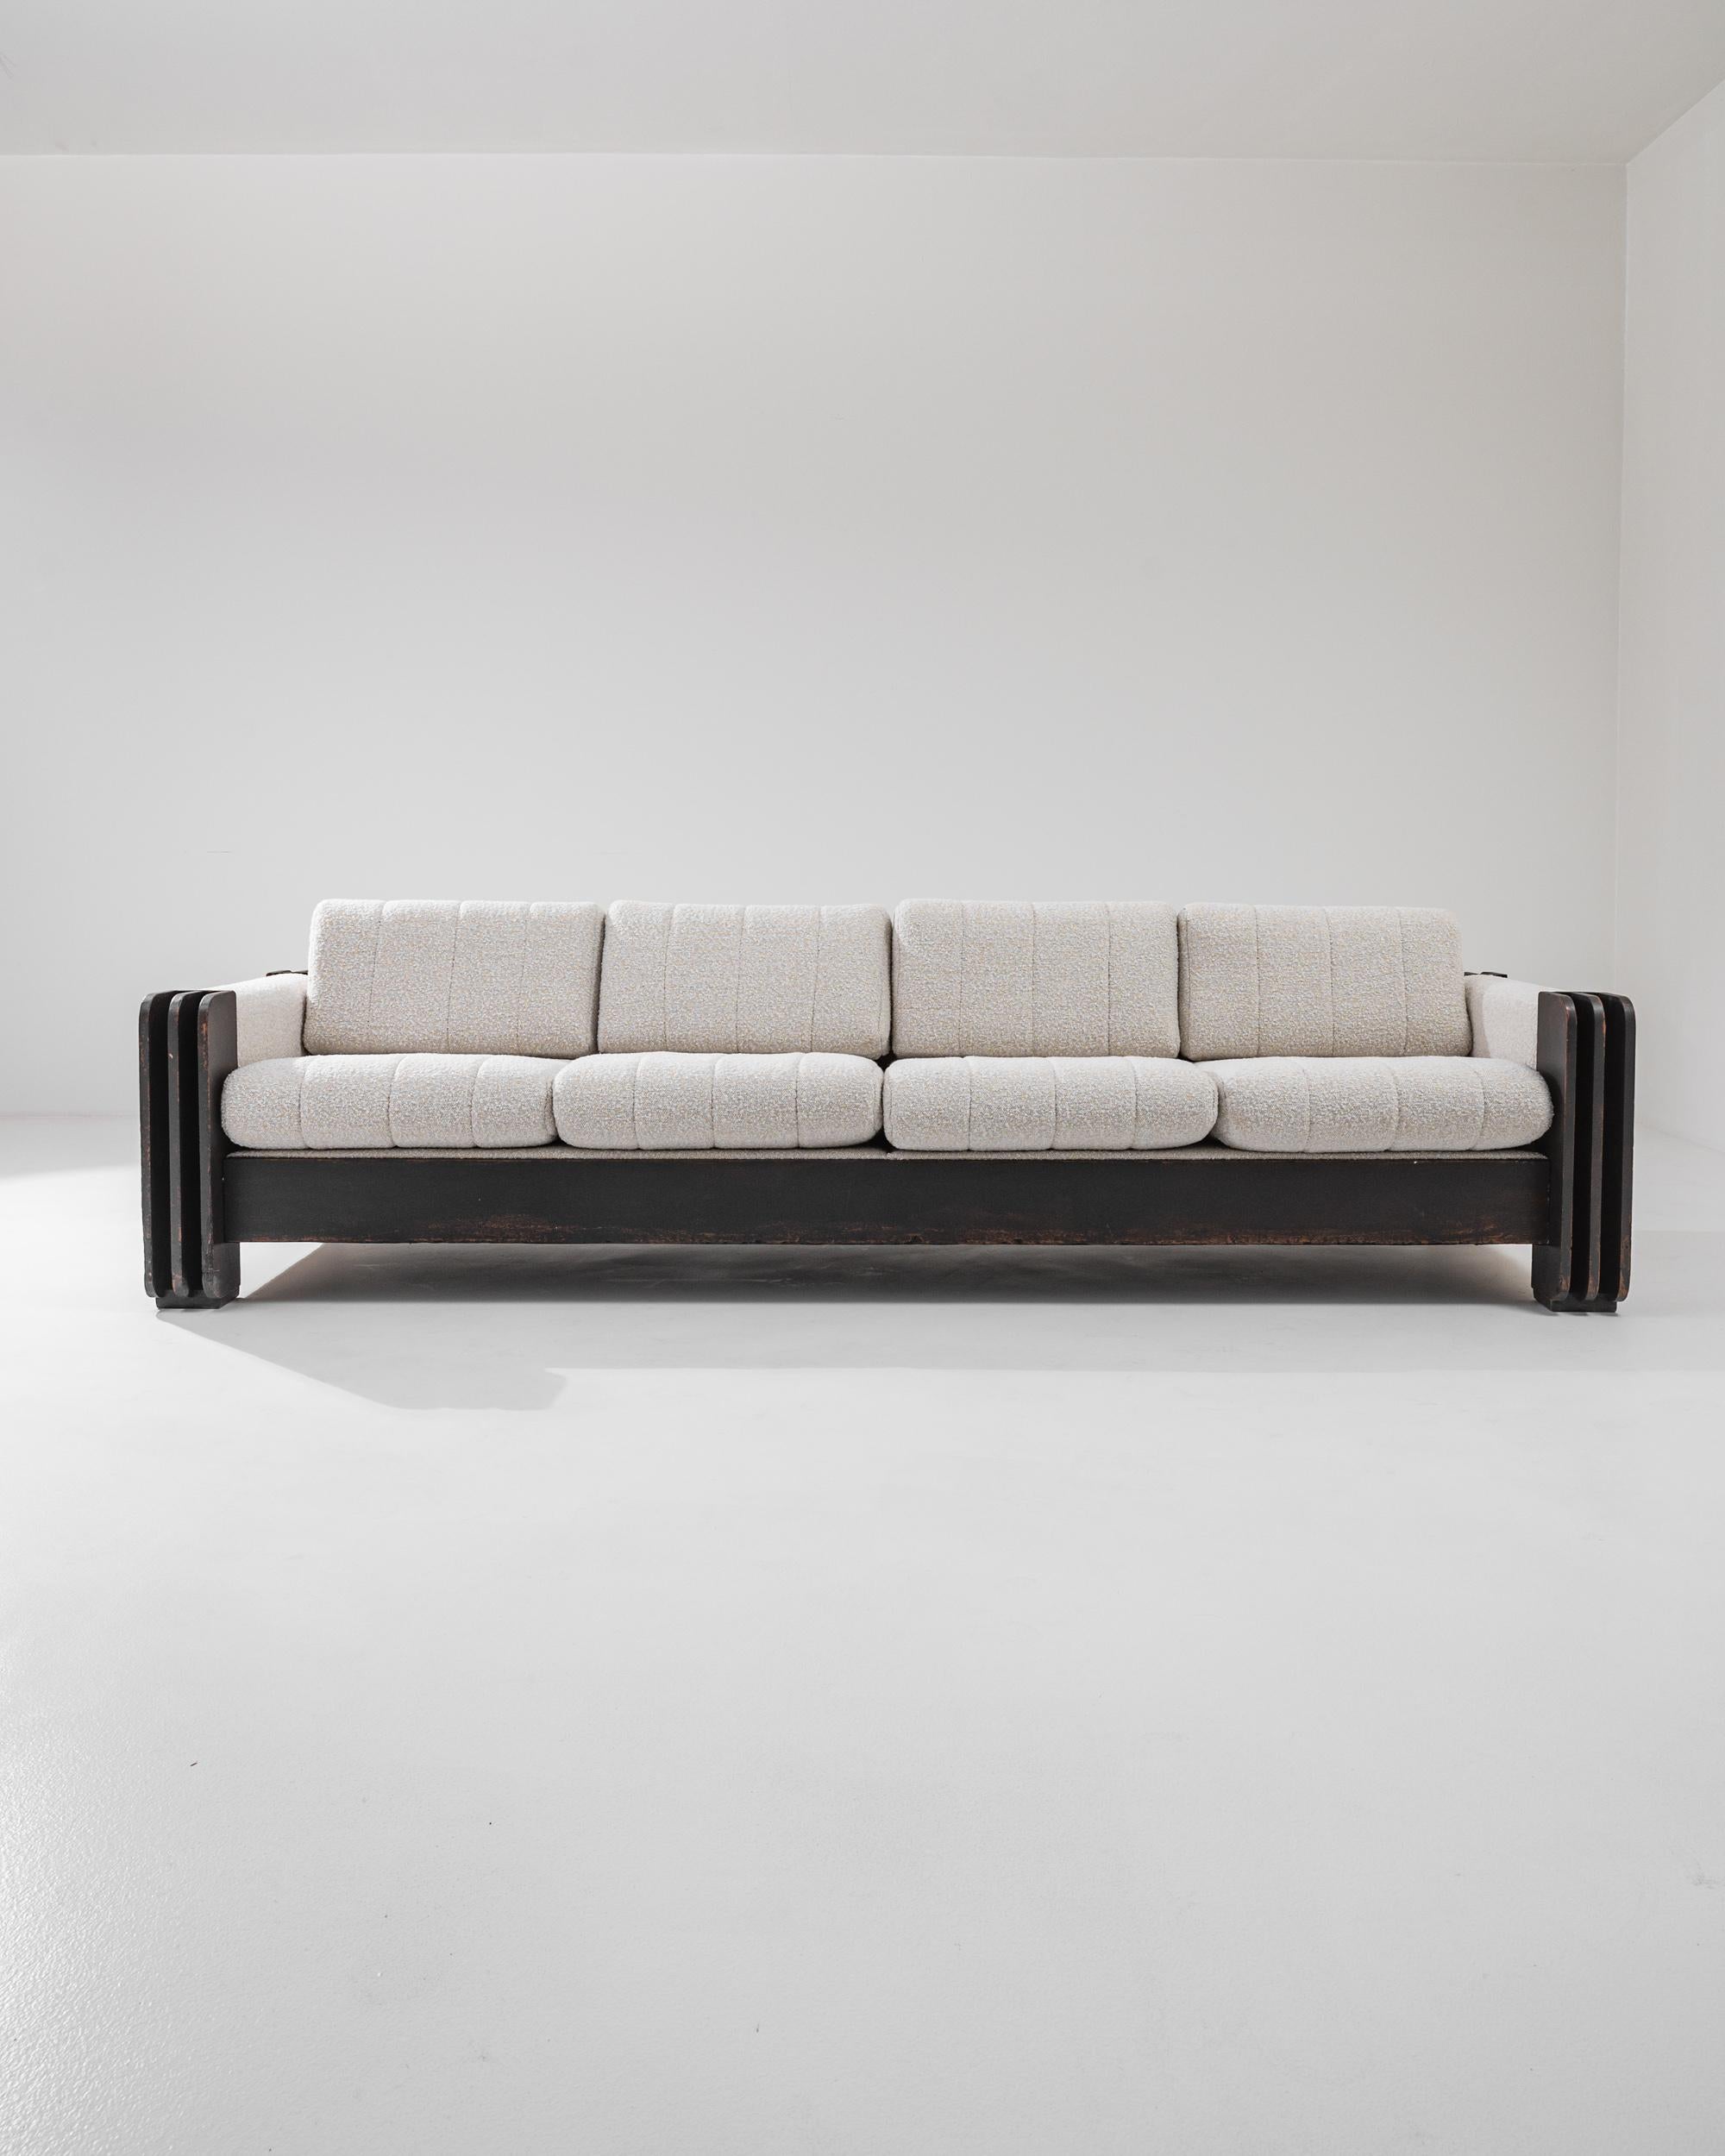 Dieses avantgardistische Viersitzer-Sofa wurde in den 1960er Jahren entworfen und zeichnet sich durch ein brutalistisches Gestell mit kühn geschnitzten Armlehnen und bequemen Polsterkissen aus. Das Nebeneinander von dunkel patiniertem Holz und dem